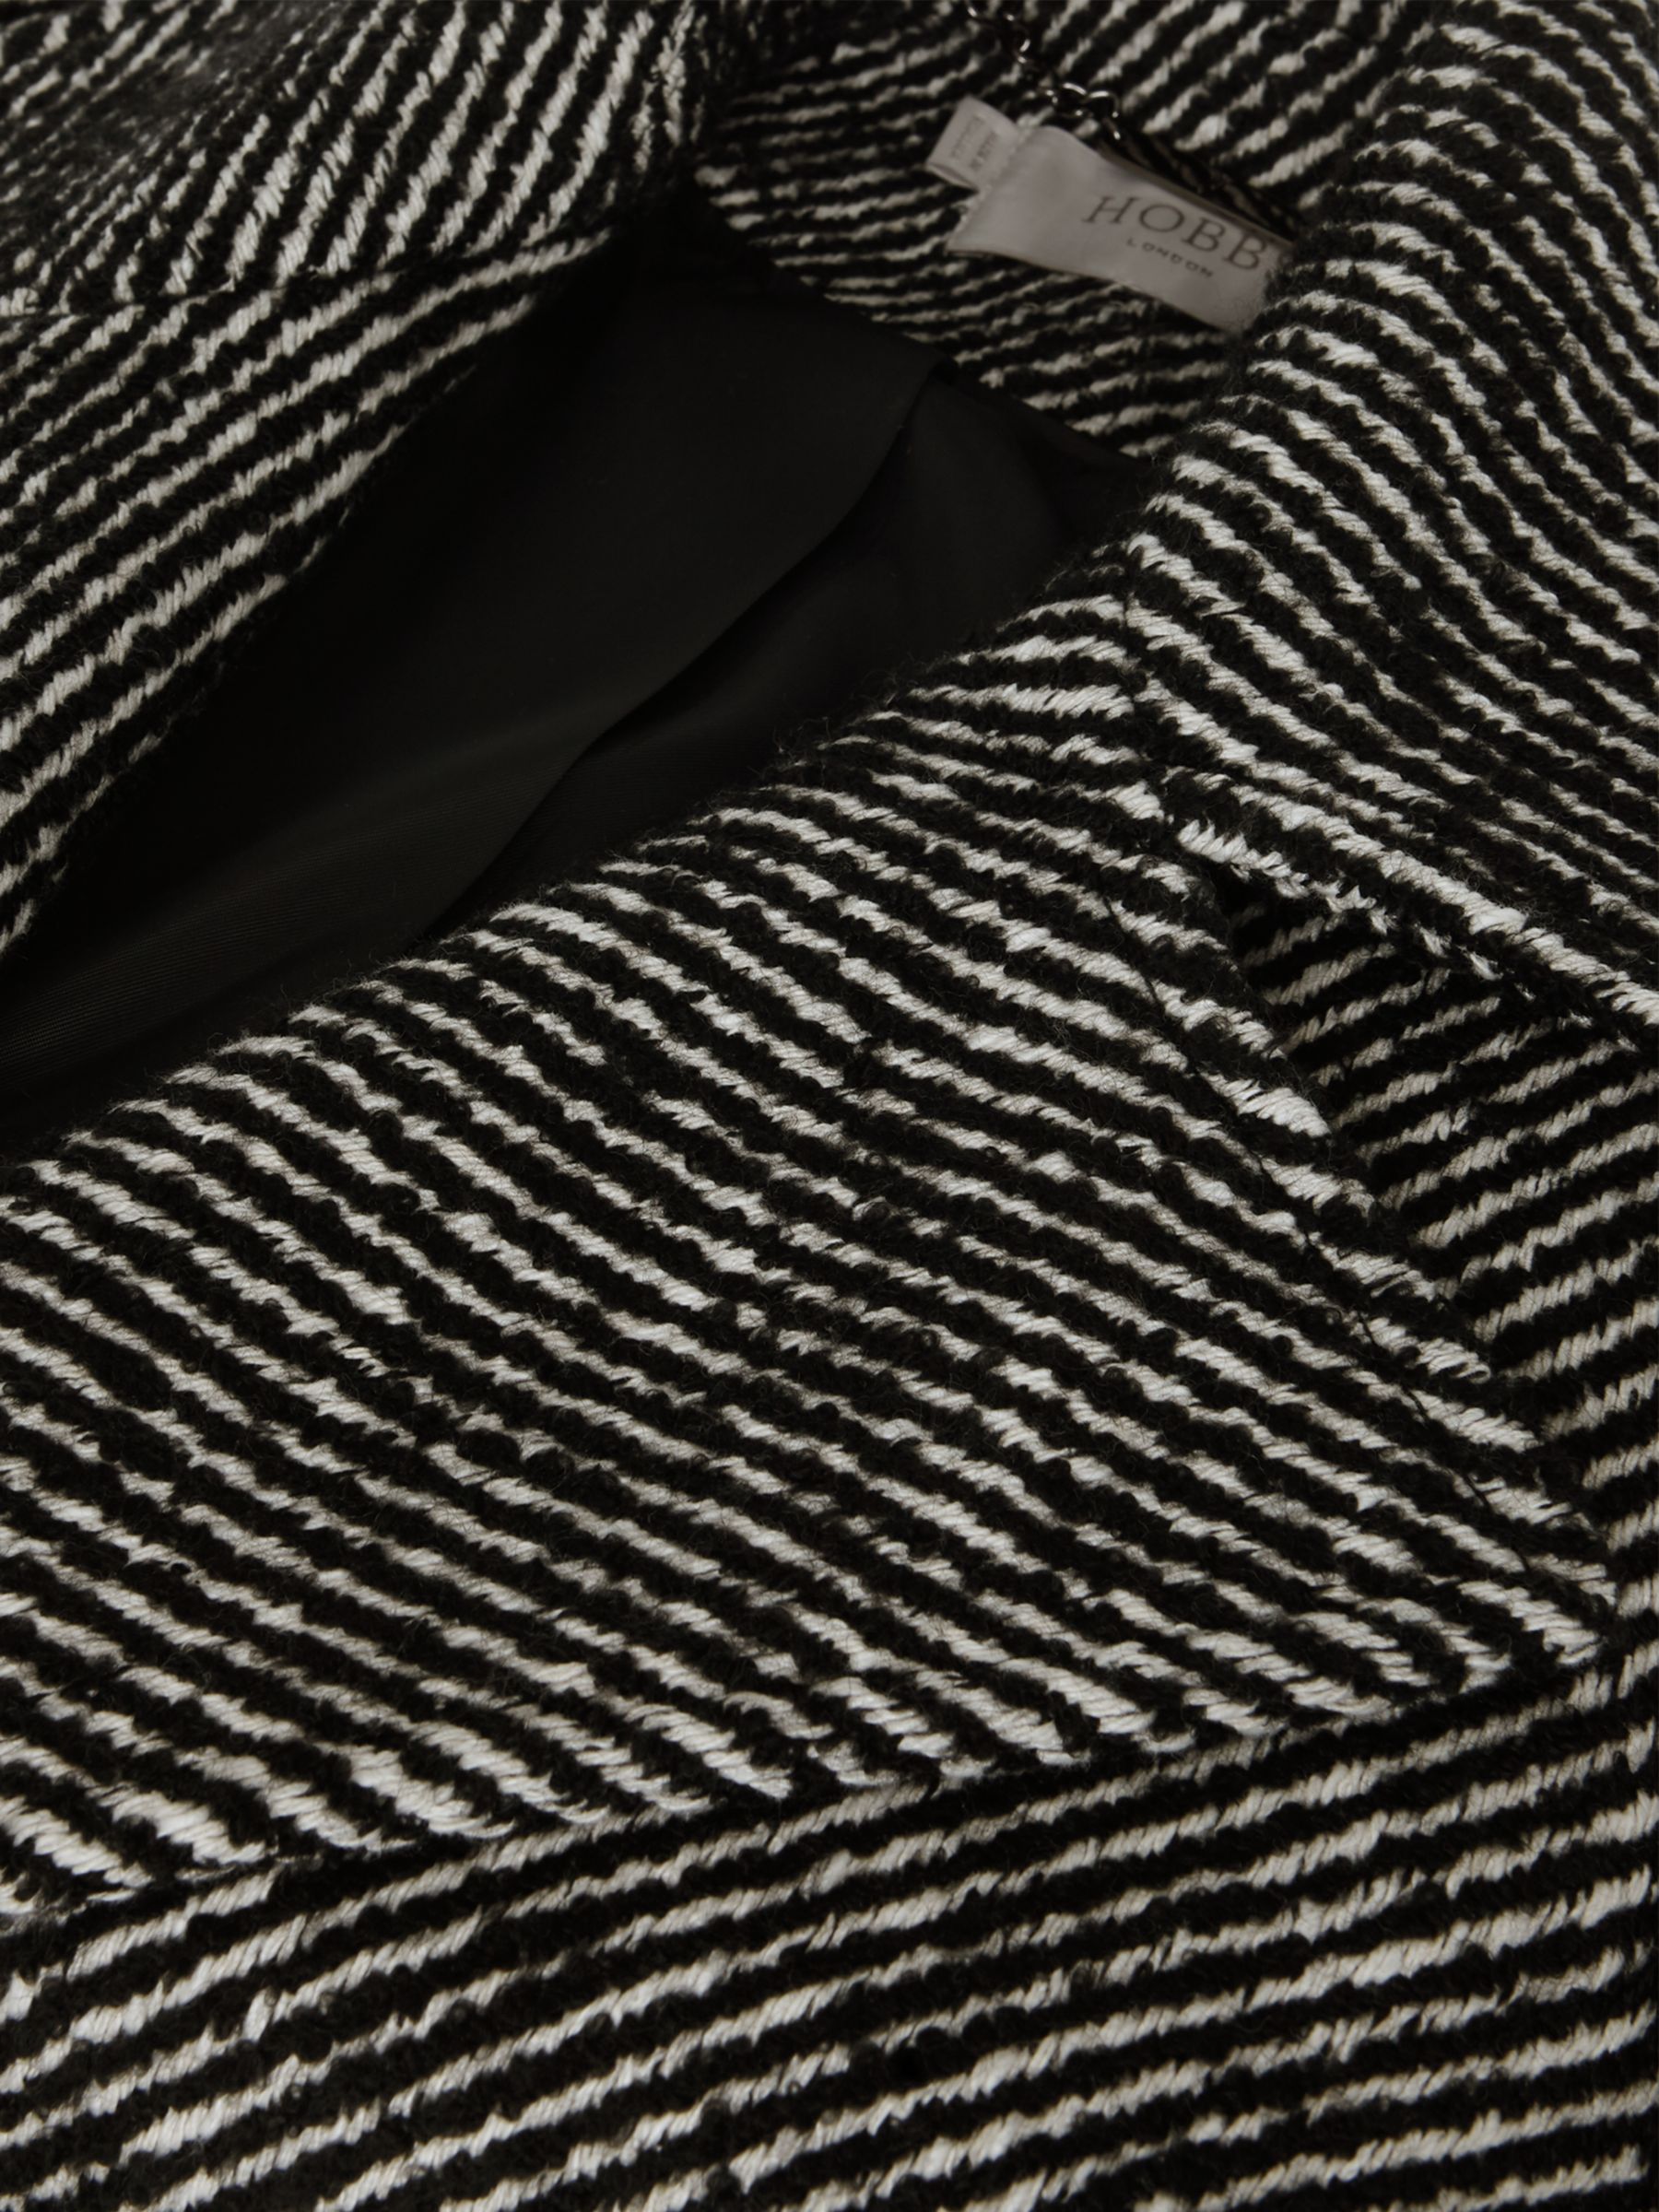 Buy Hobbs Gerrie Wrap Coat, Black/White Online at johnlewis.com